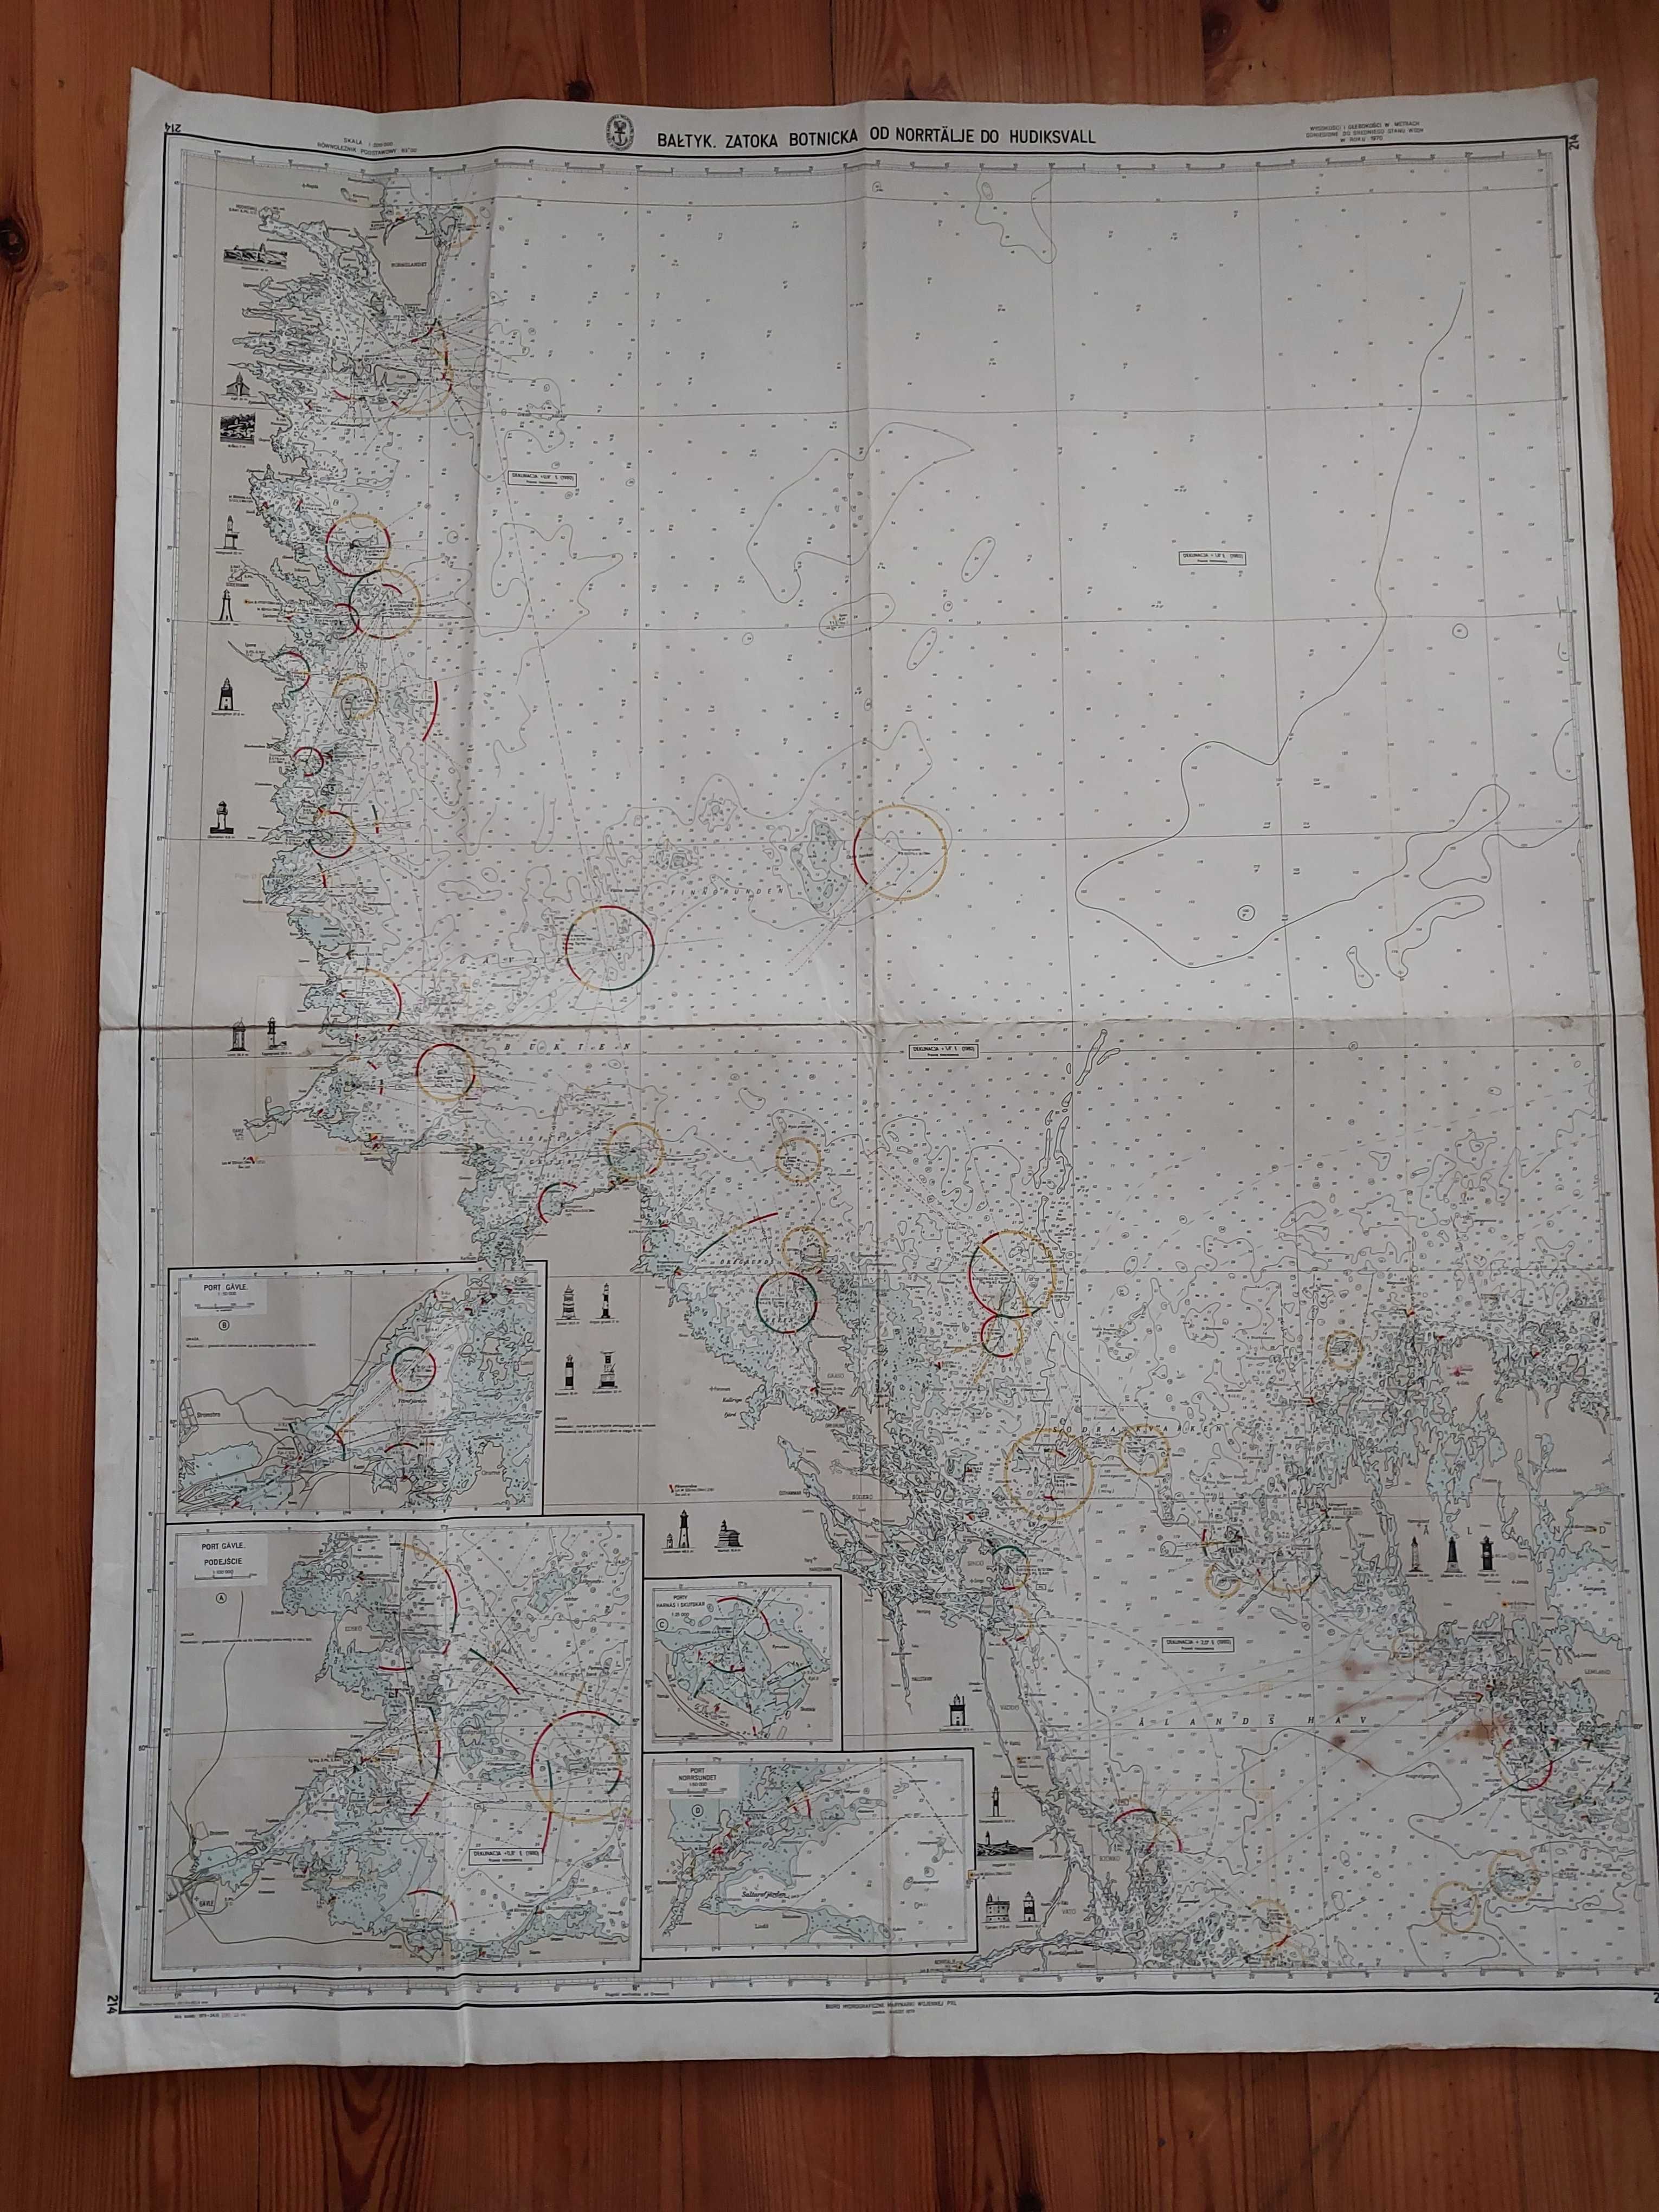 Mapa morska PRL1979: Bałtyk.Zatoka Botnicka od Norrtalje do Hudiksvall